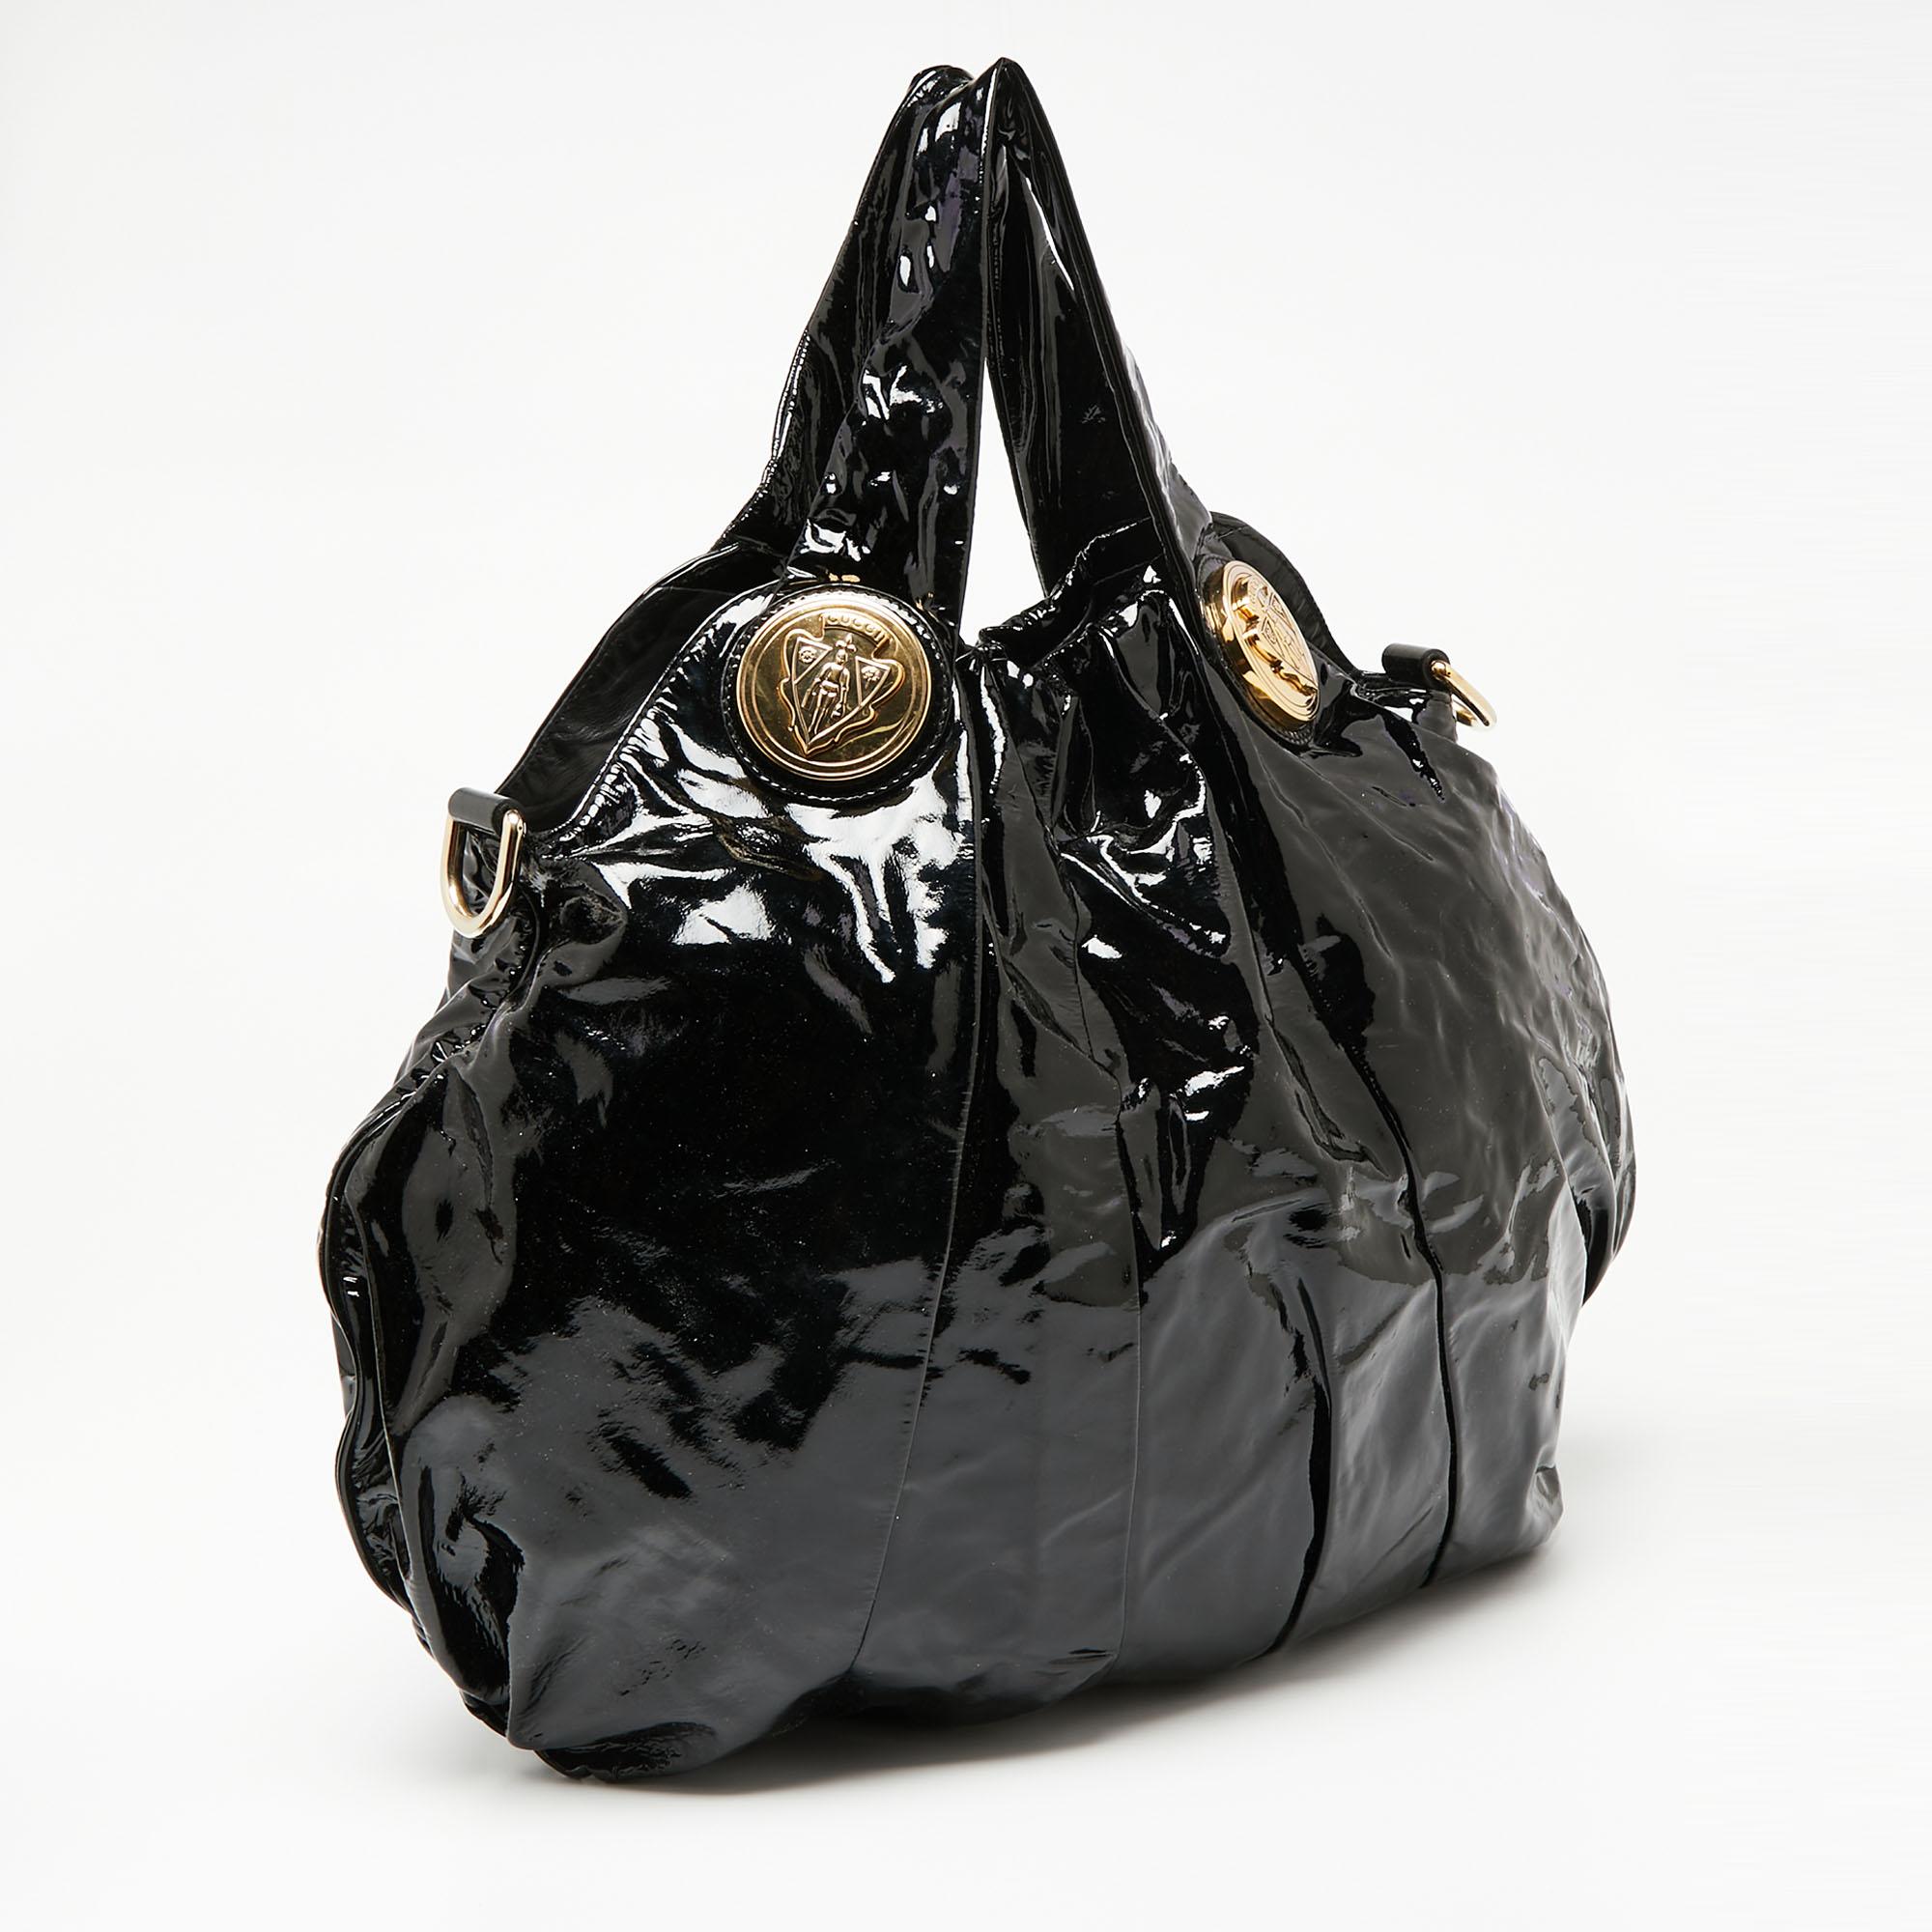 Gucci Black Patent Leather Large Hysteria Tote In Good Condition For Sale In Dubai, Al Qouz 2